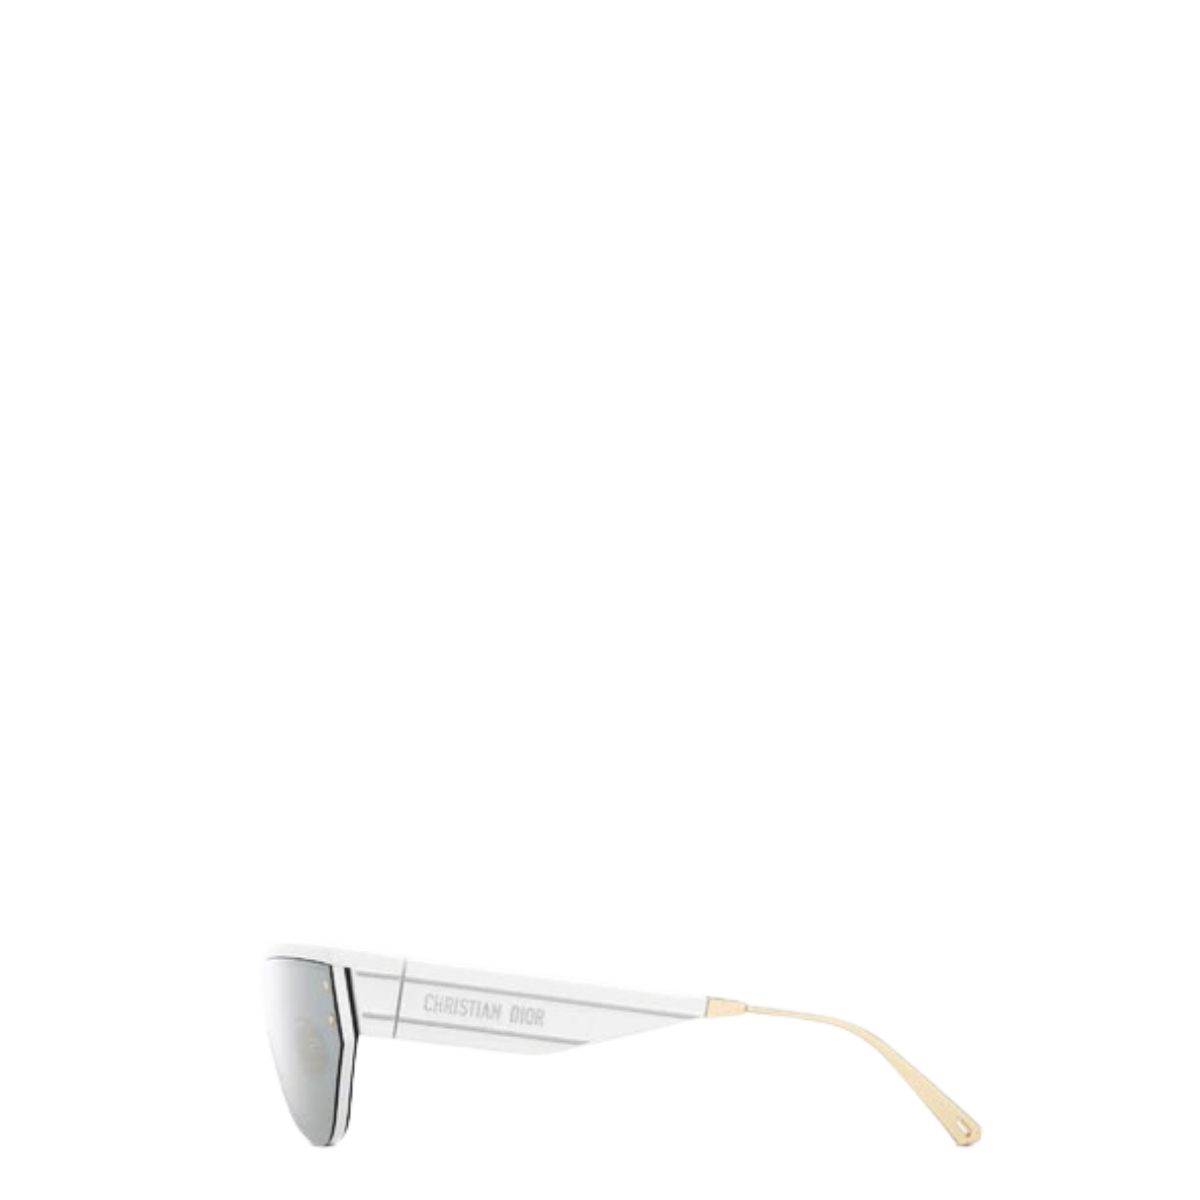 Óculos Christian Dior DiorClub M3U Cinza e Branco Espelhado